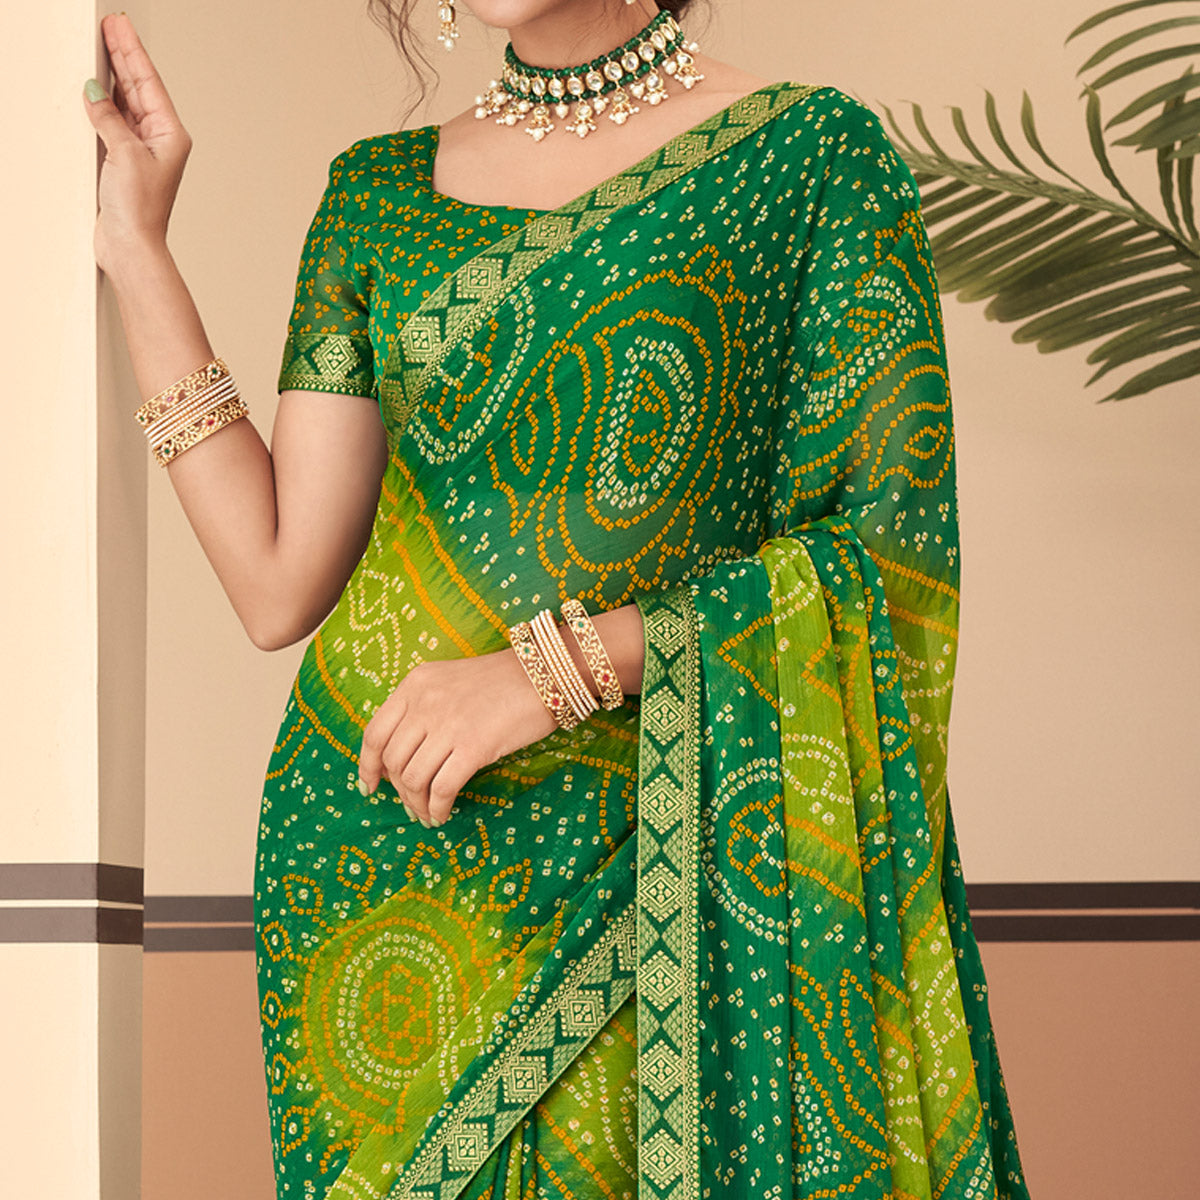 Green Bandhani Printed Chiffon Saree With Lace Border